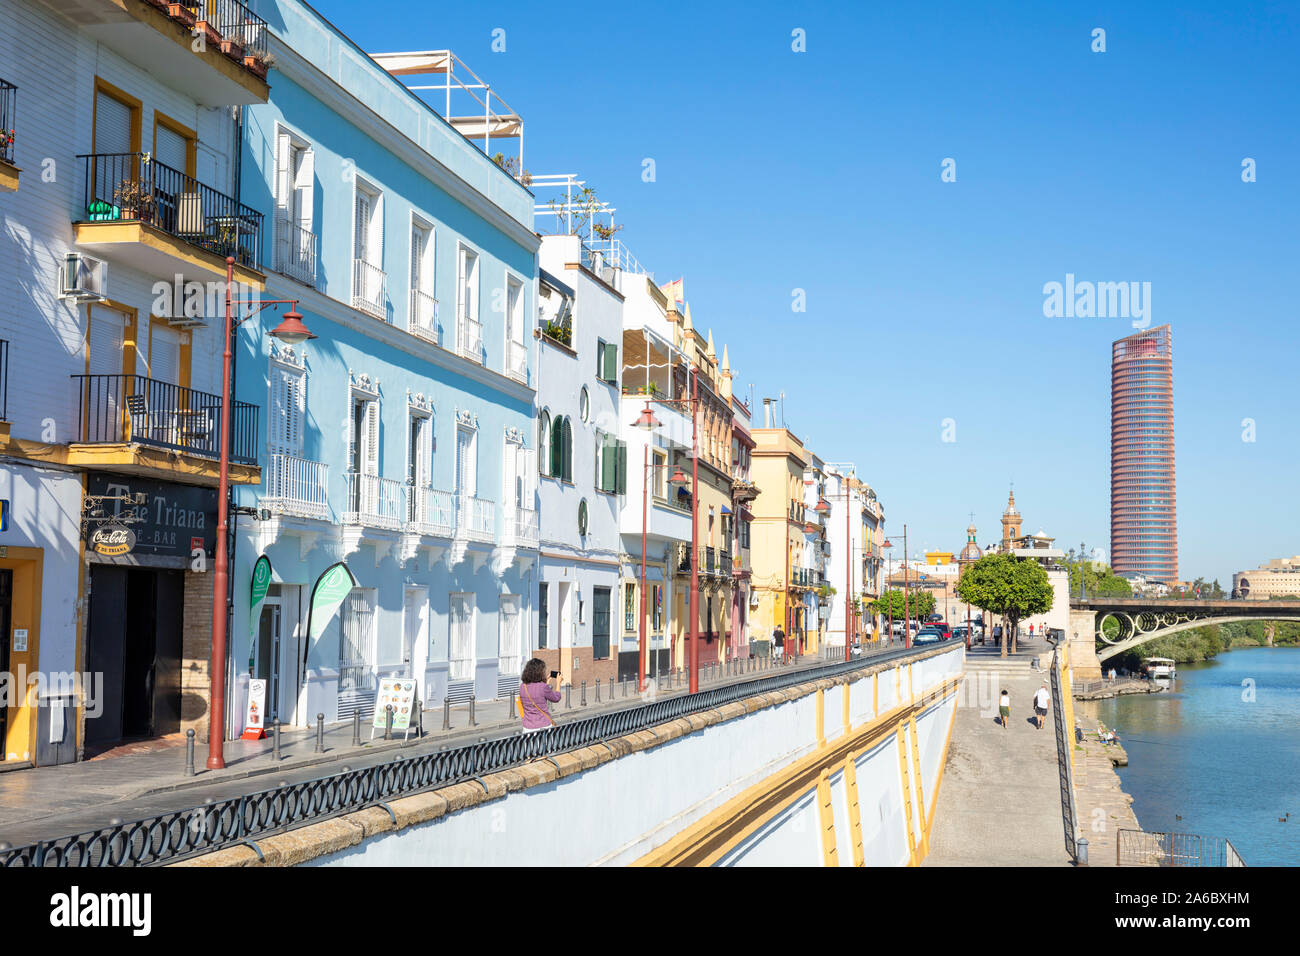 Triana farbige Häuser entlang der Ufer des Flusses Guadalquivir Sevilla Turm hinter Sevilla Sevilla Spanien Sevilla Andalusien Spanien EU Europa Stockfoto